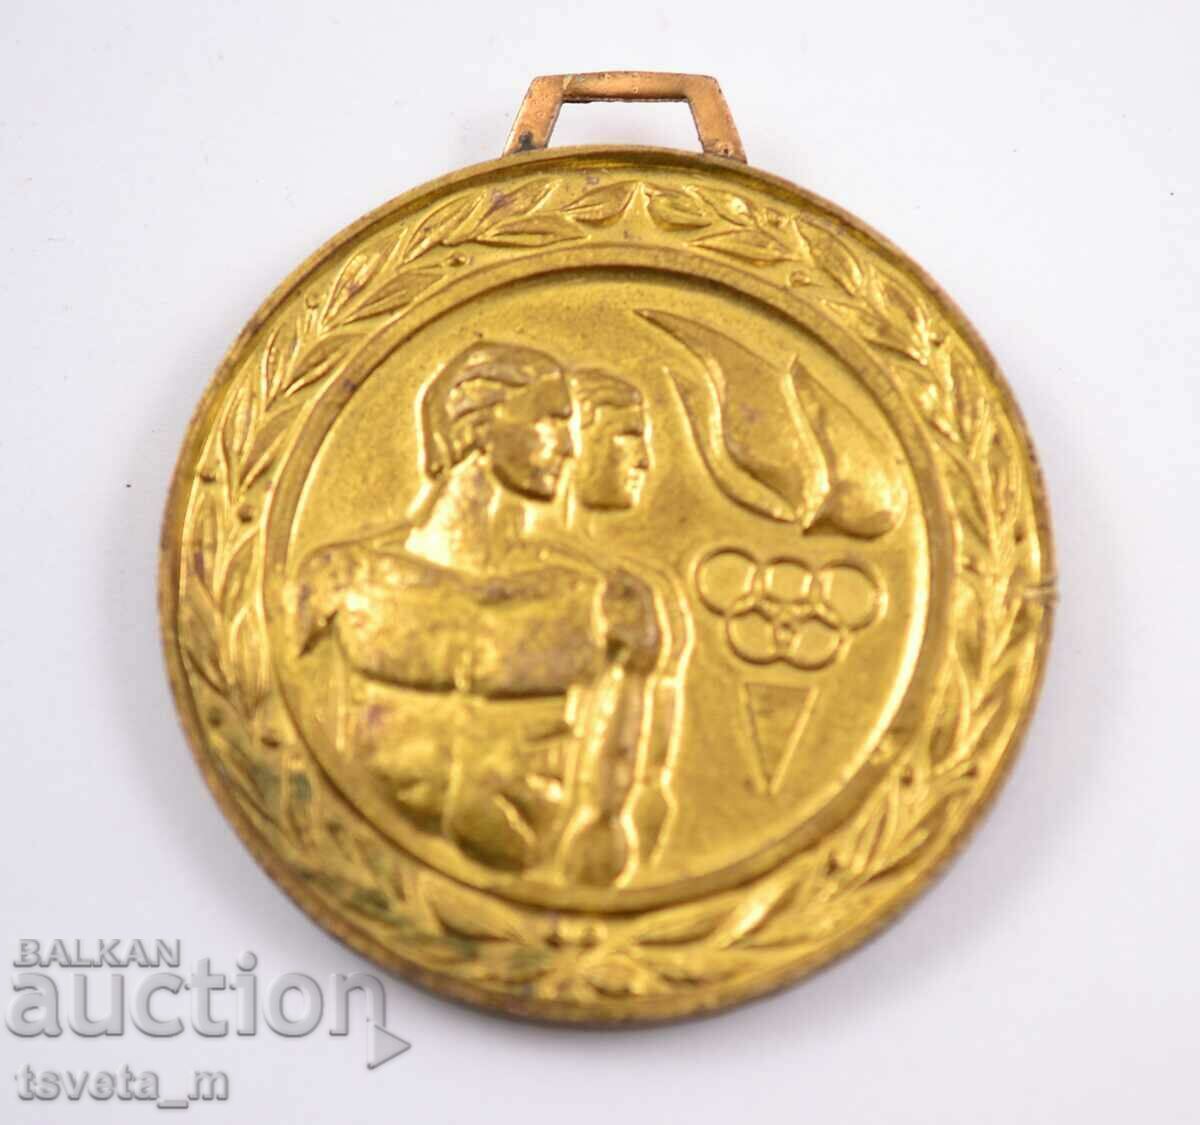 Μετάλλιο, πλακέτα «Κεντρική Επιτροπή της Ολυμπιακής Φλόγας του DKMS